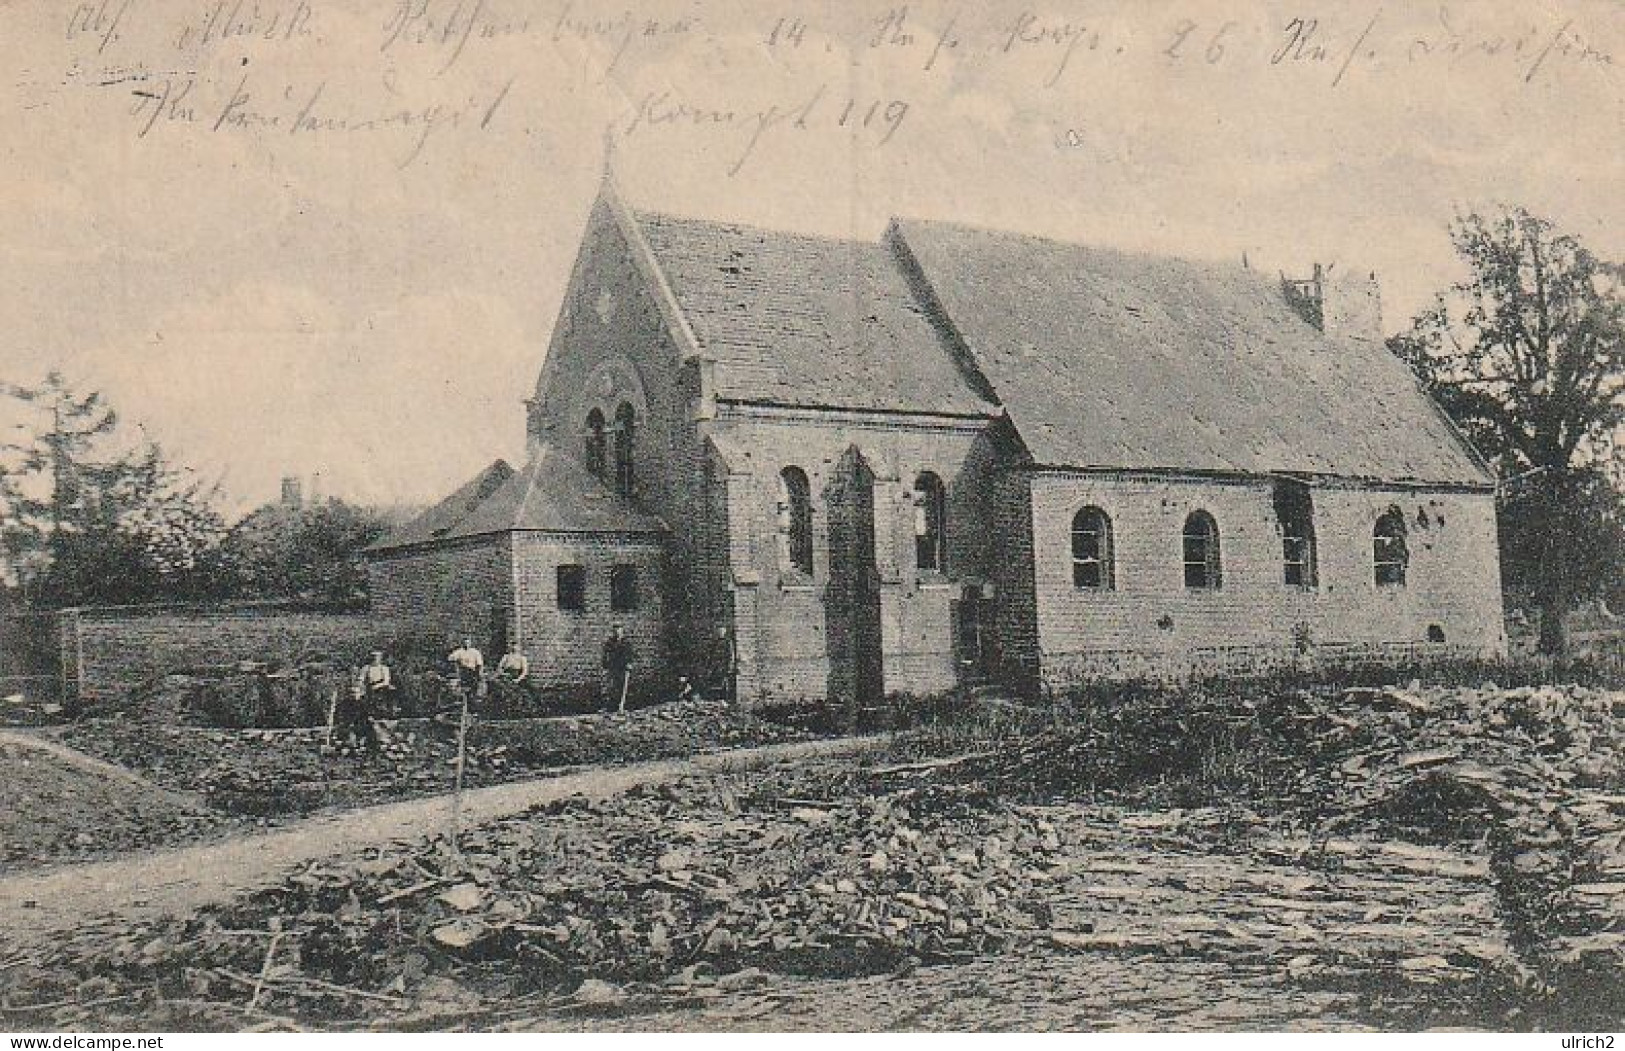 AK Thiepval - Deutsche Soldaten Bei Grabearbeiten Vor Kirche - Feldpost 1916  (69004) - Albert